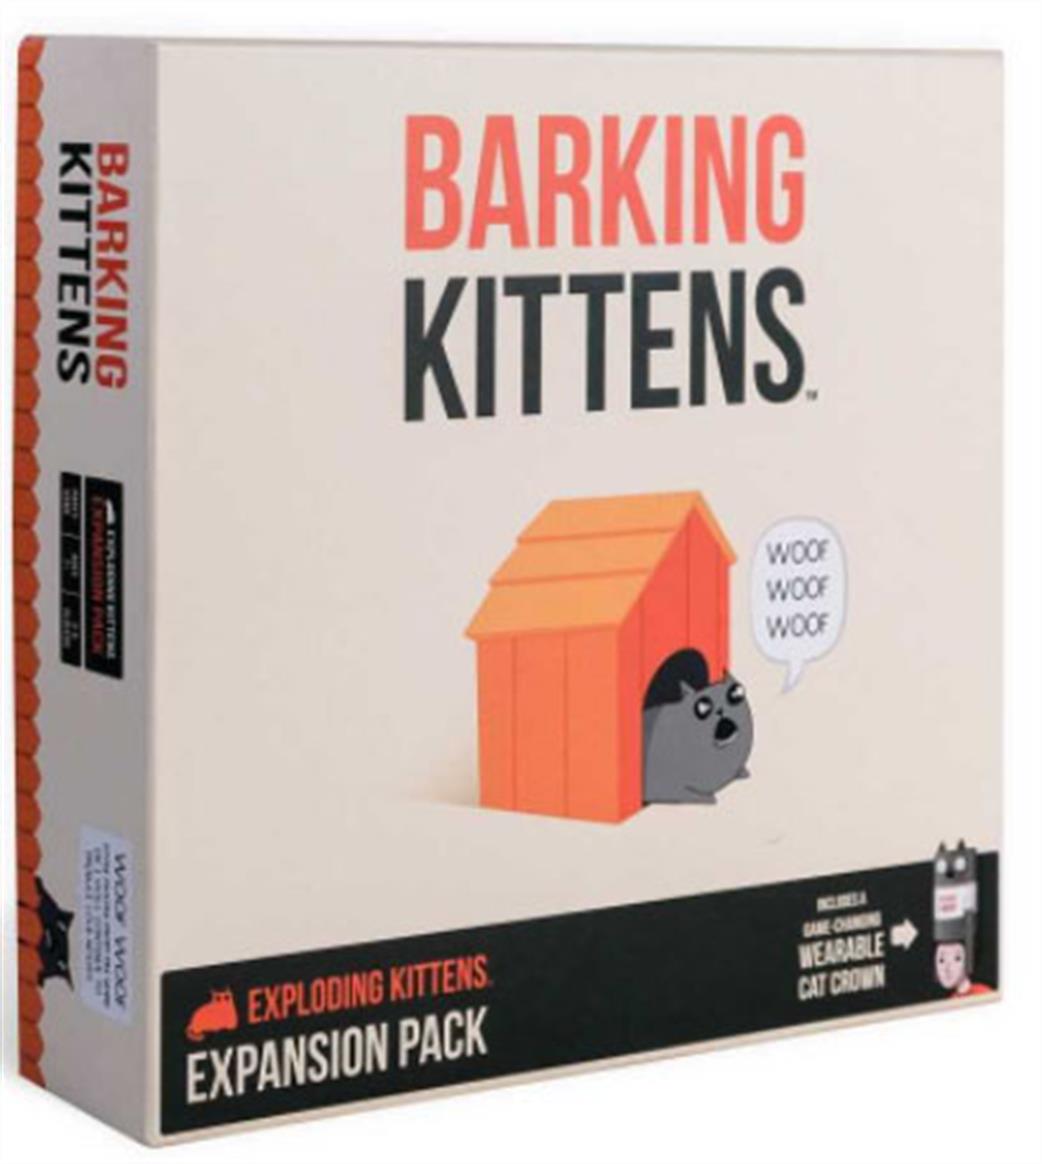 00631 Barking Kittens, Exploding Kittens Expansion